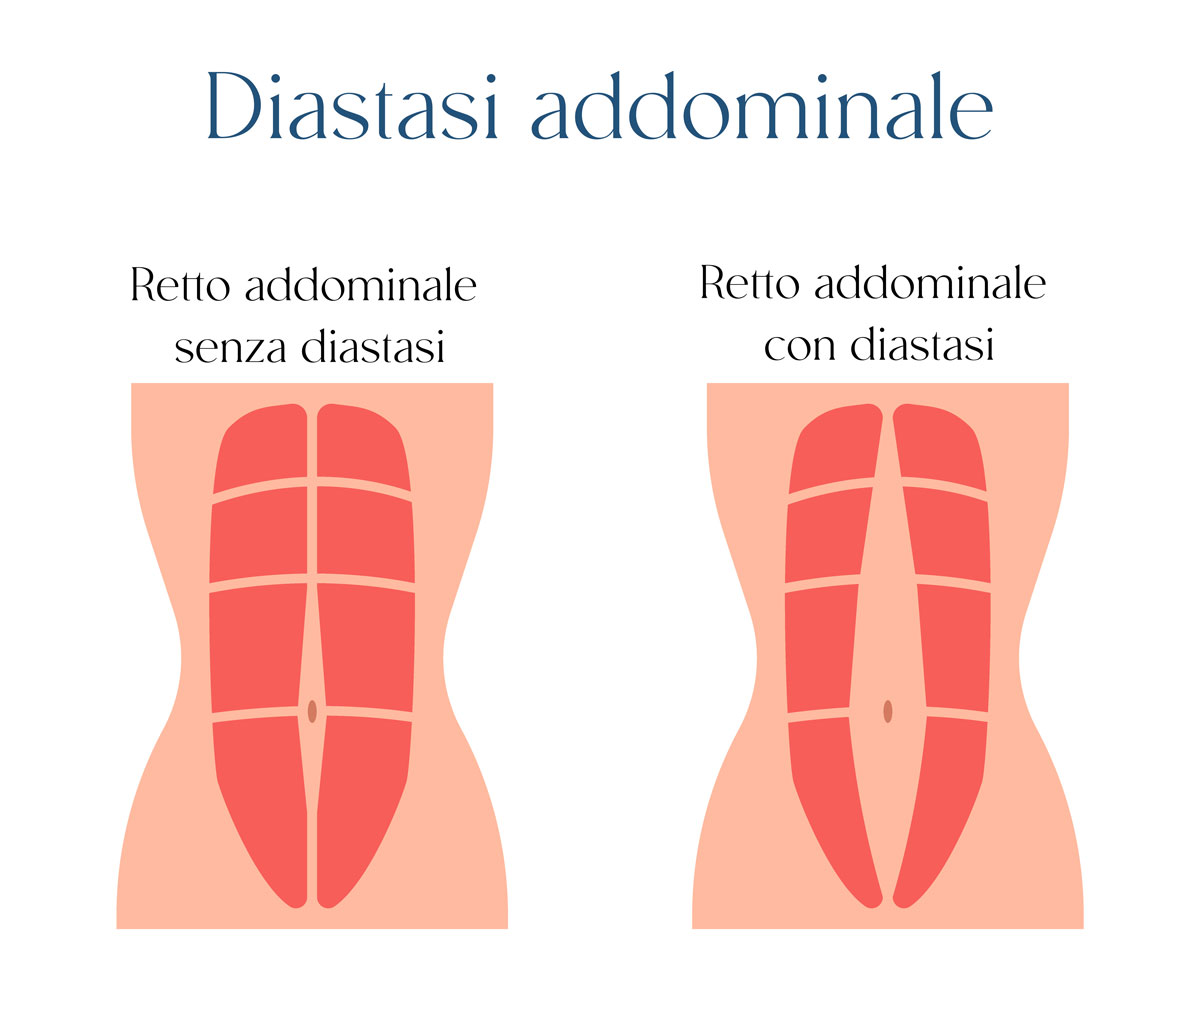 Diastasi addominale